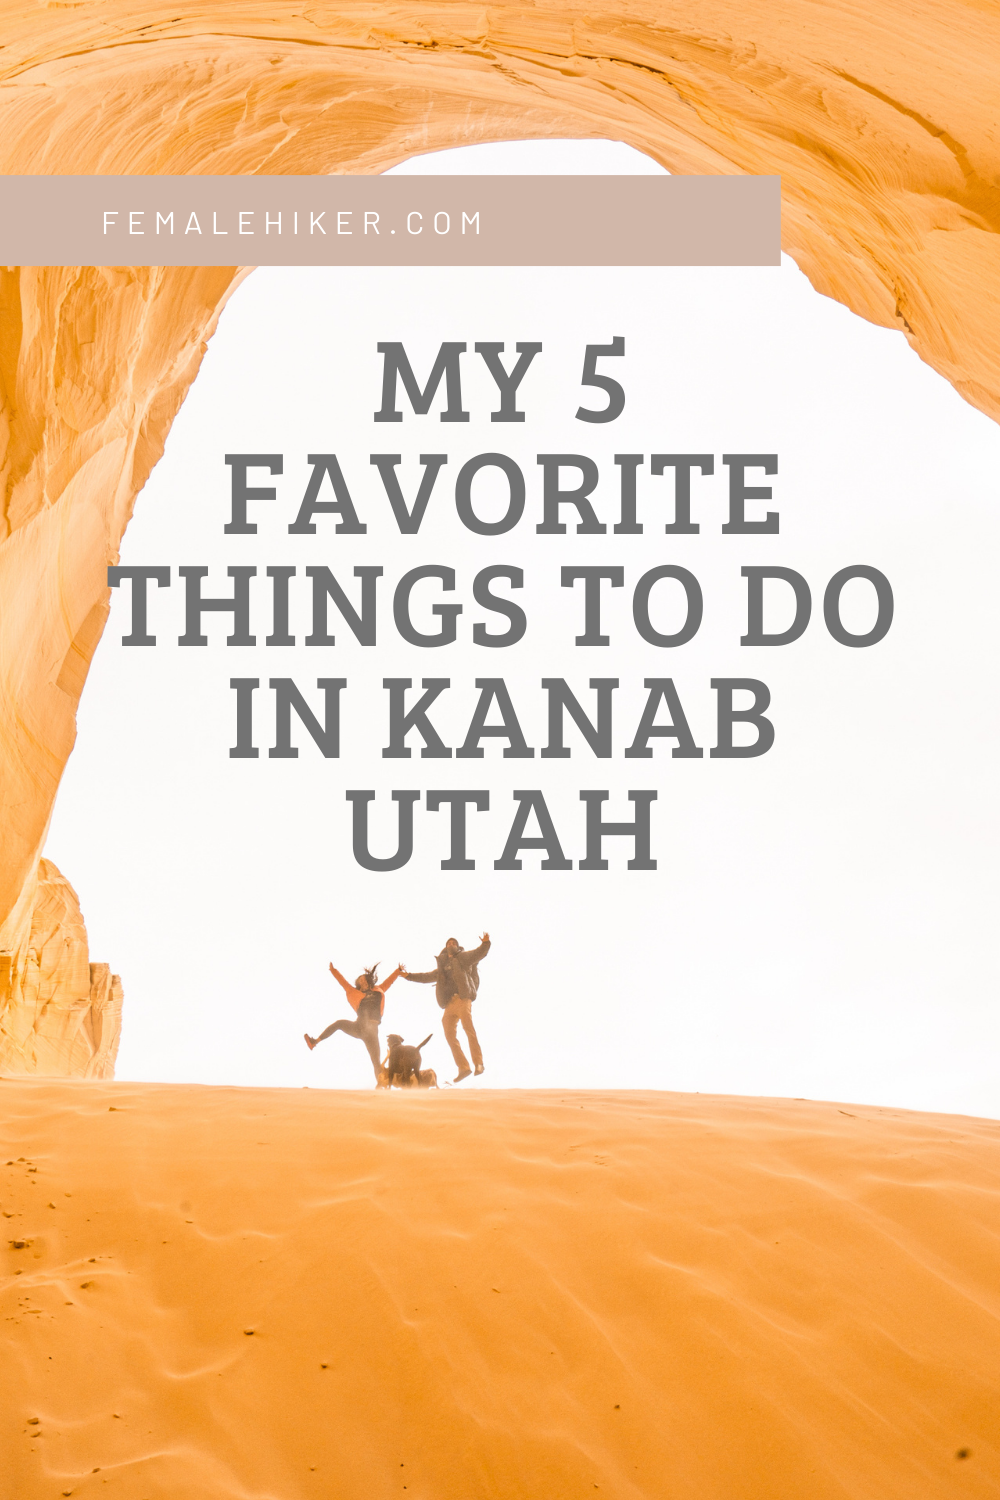 MY 5 FAVORITE THINGS TO DO IN KANAB UTAH